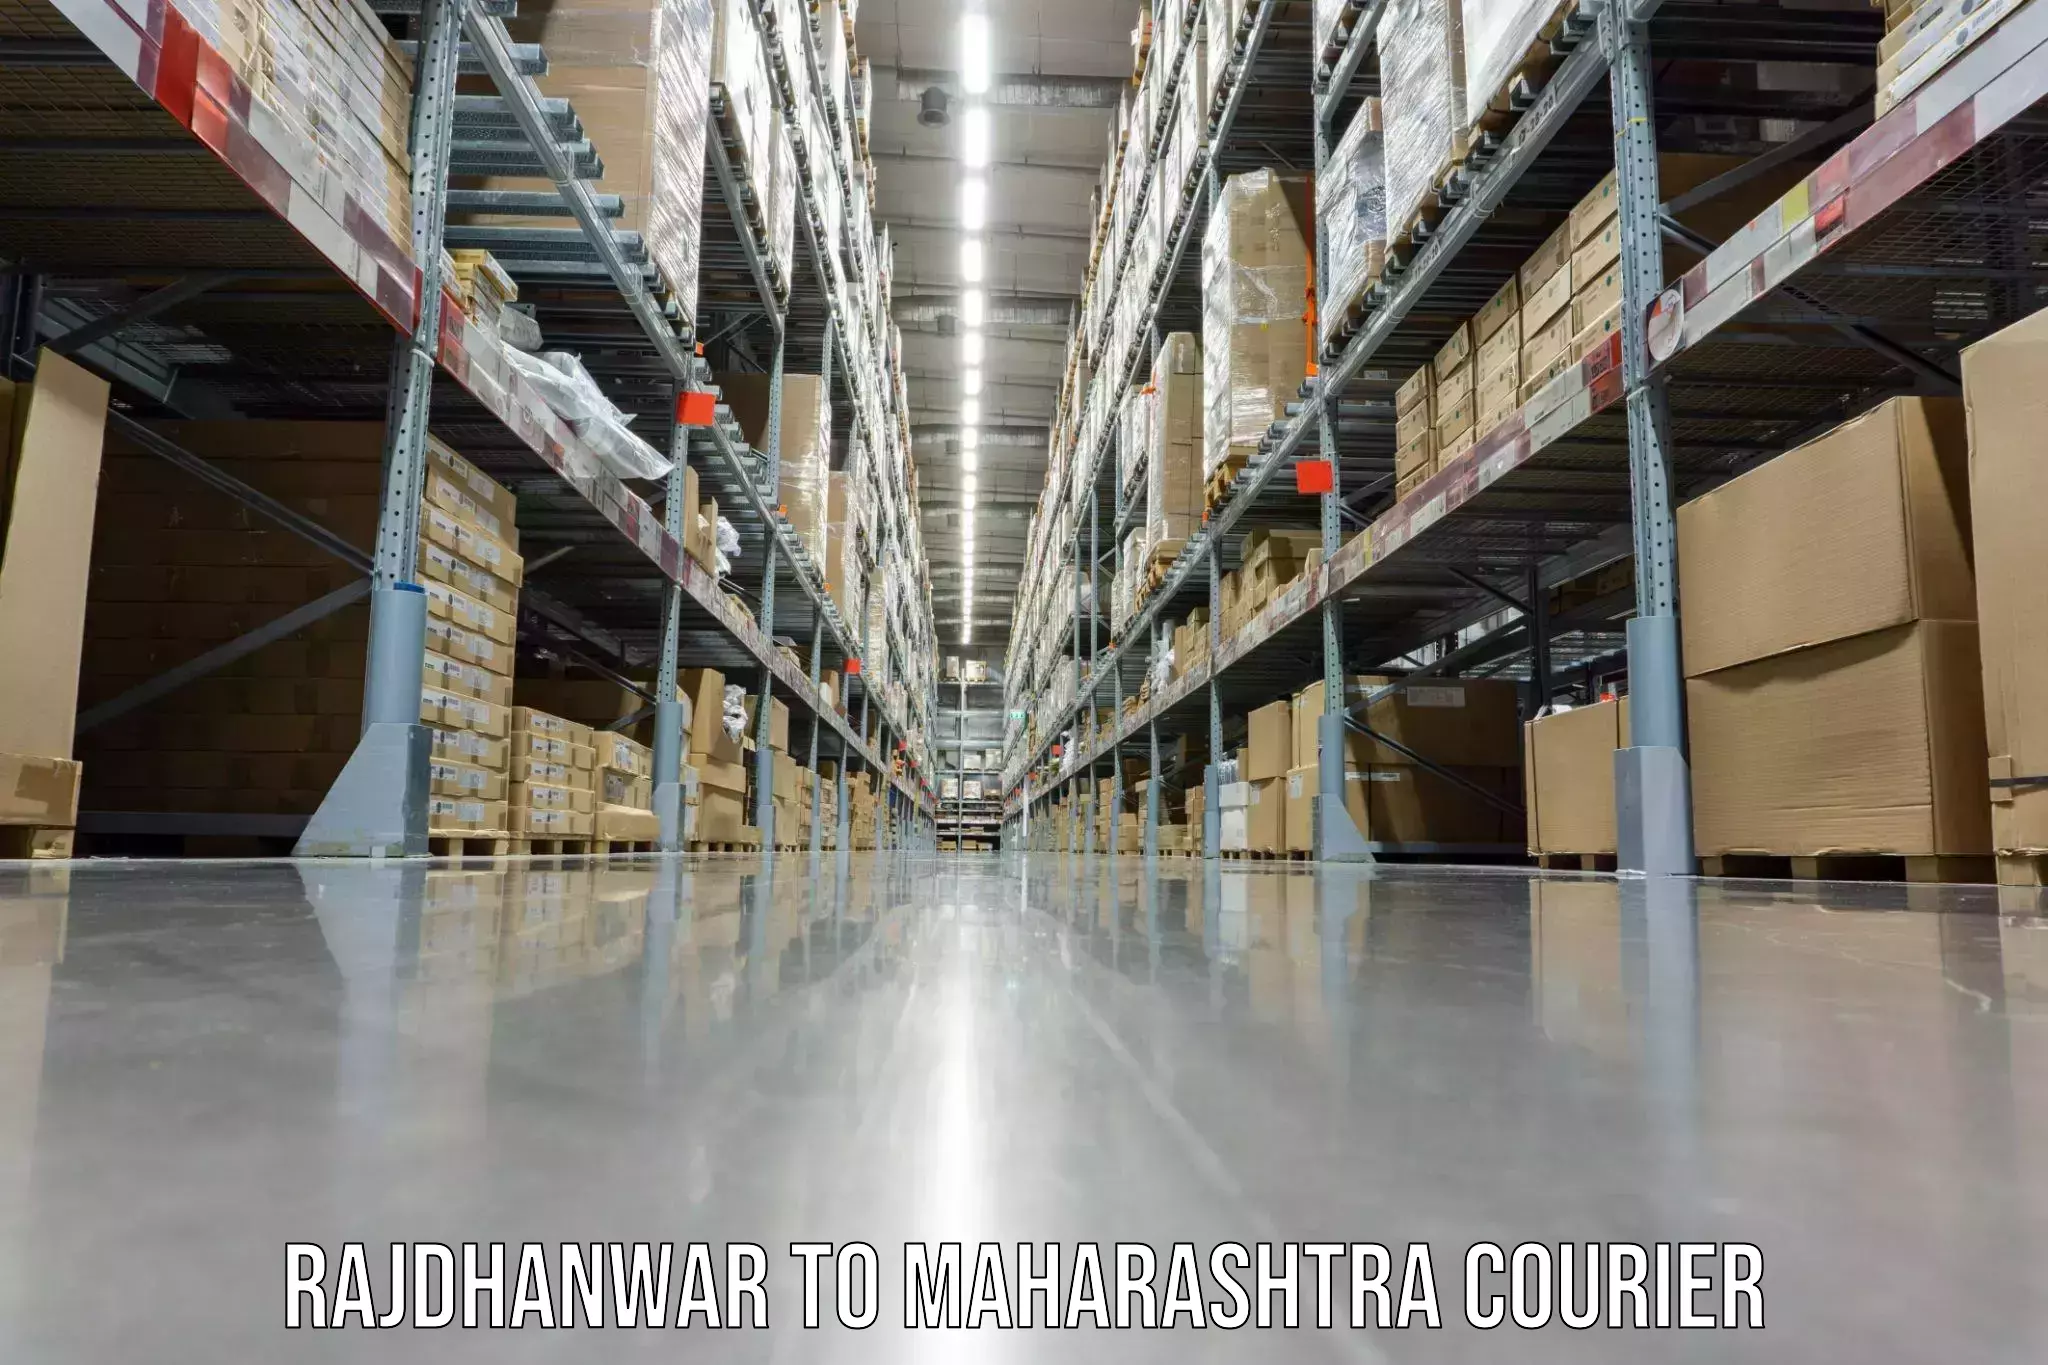 Moving and packing experts Rajdhanwar to Navi Mumbai